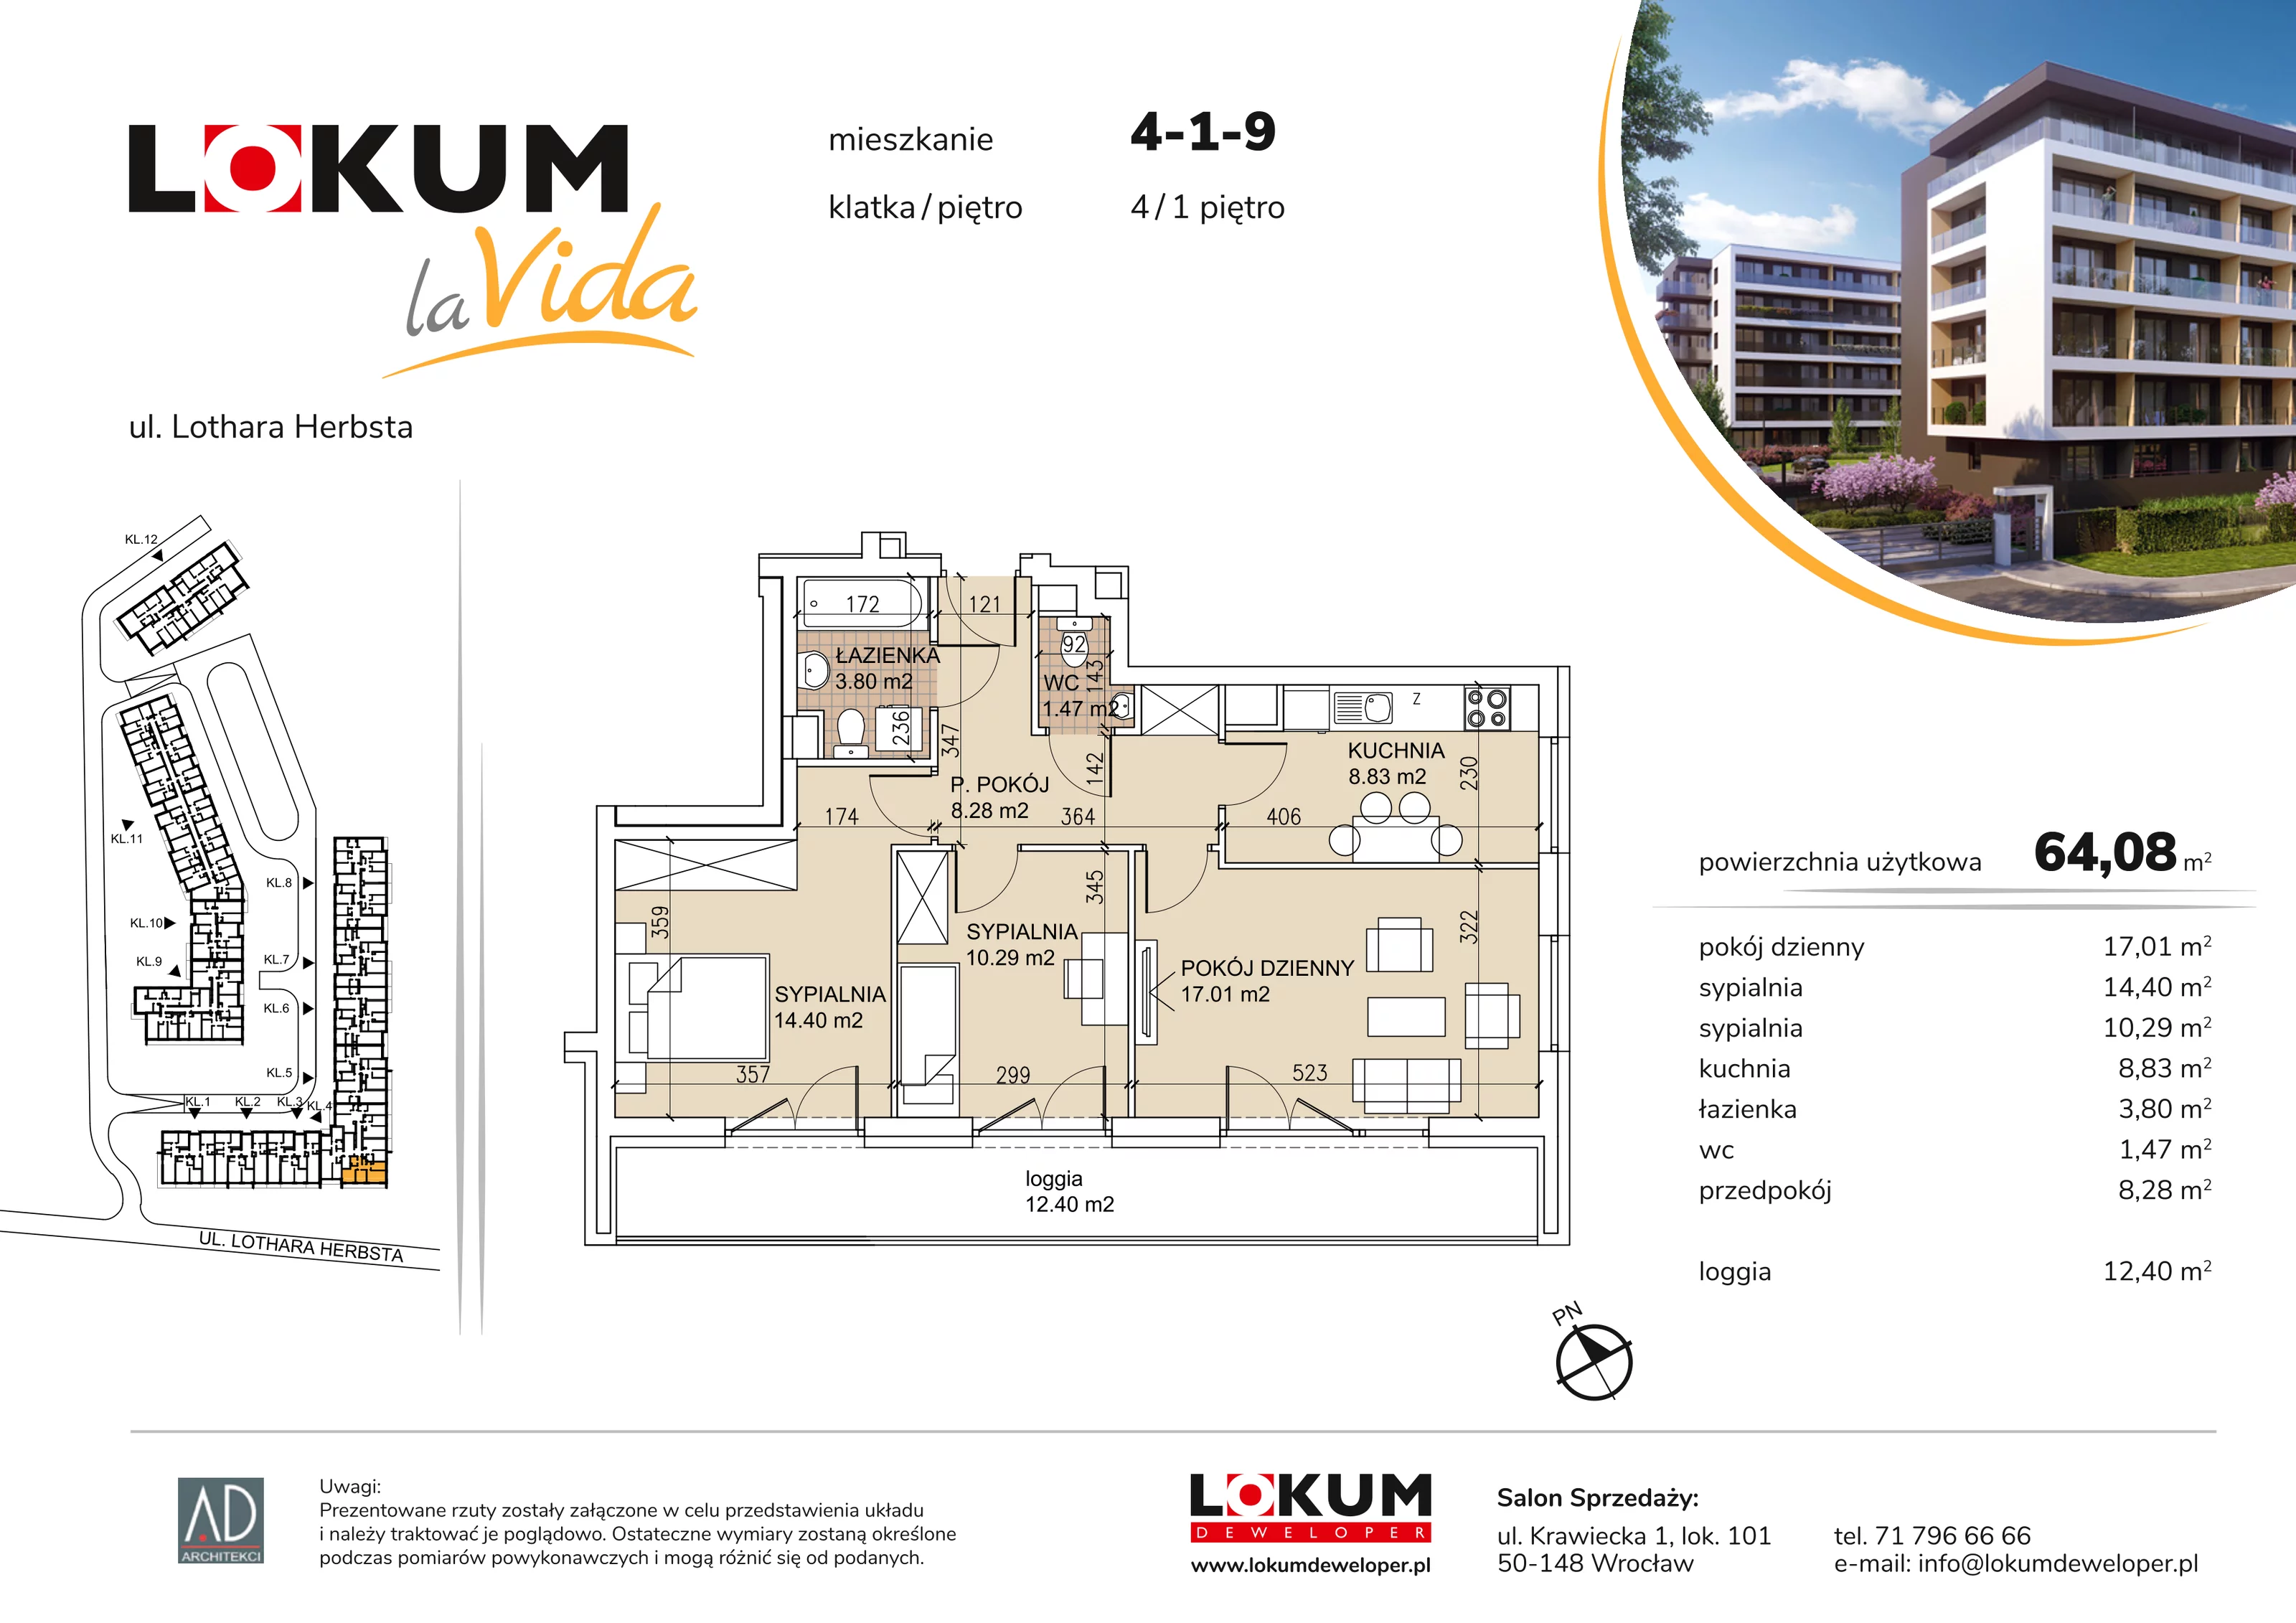 Mieszkanie 64,08 m², piętro 1, oferta nr 4-1-9, Lokum la Vida, Wrocław, Sołtysowice, ul. Lothara Herbsta